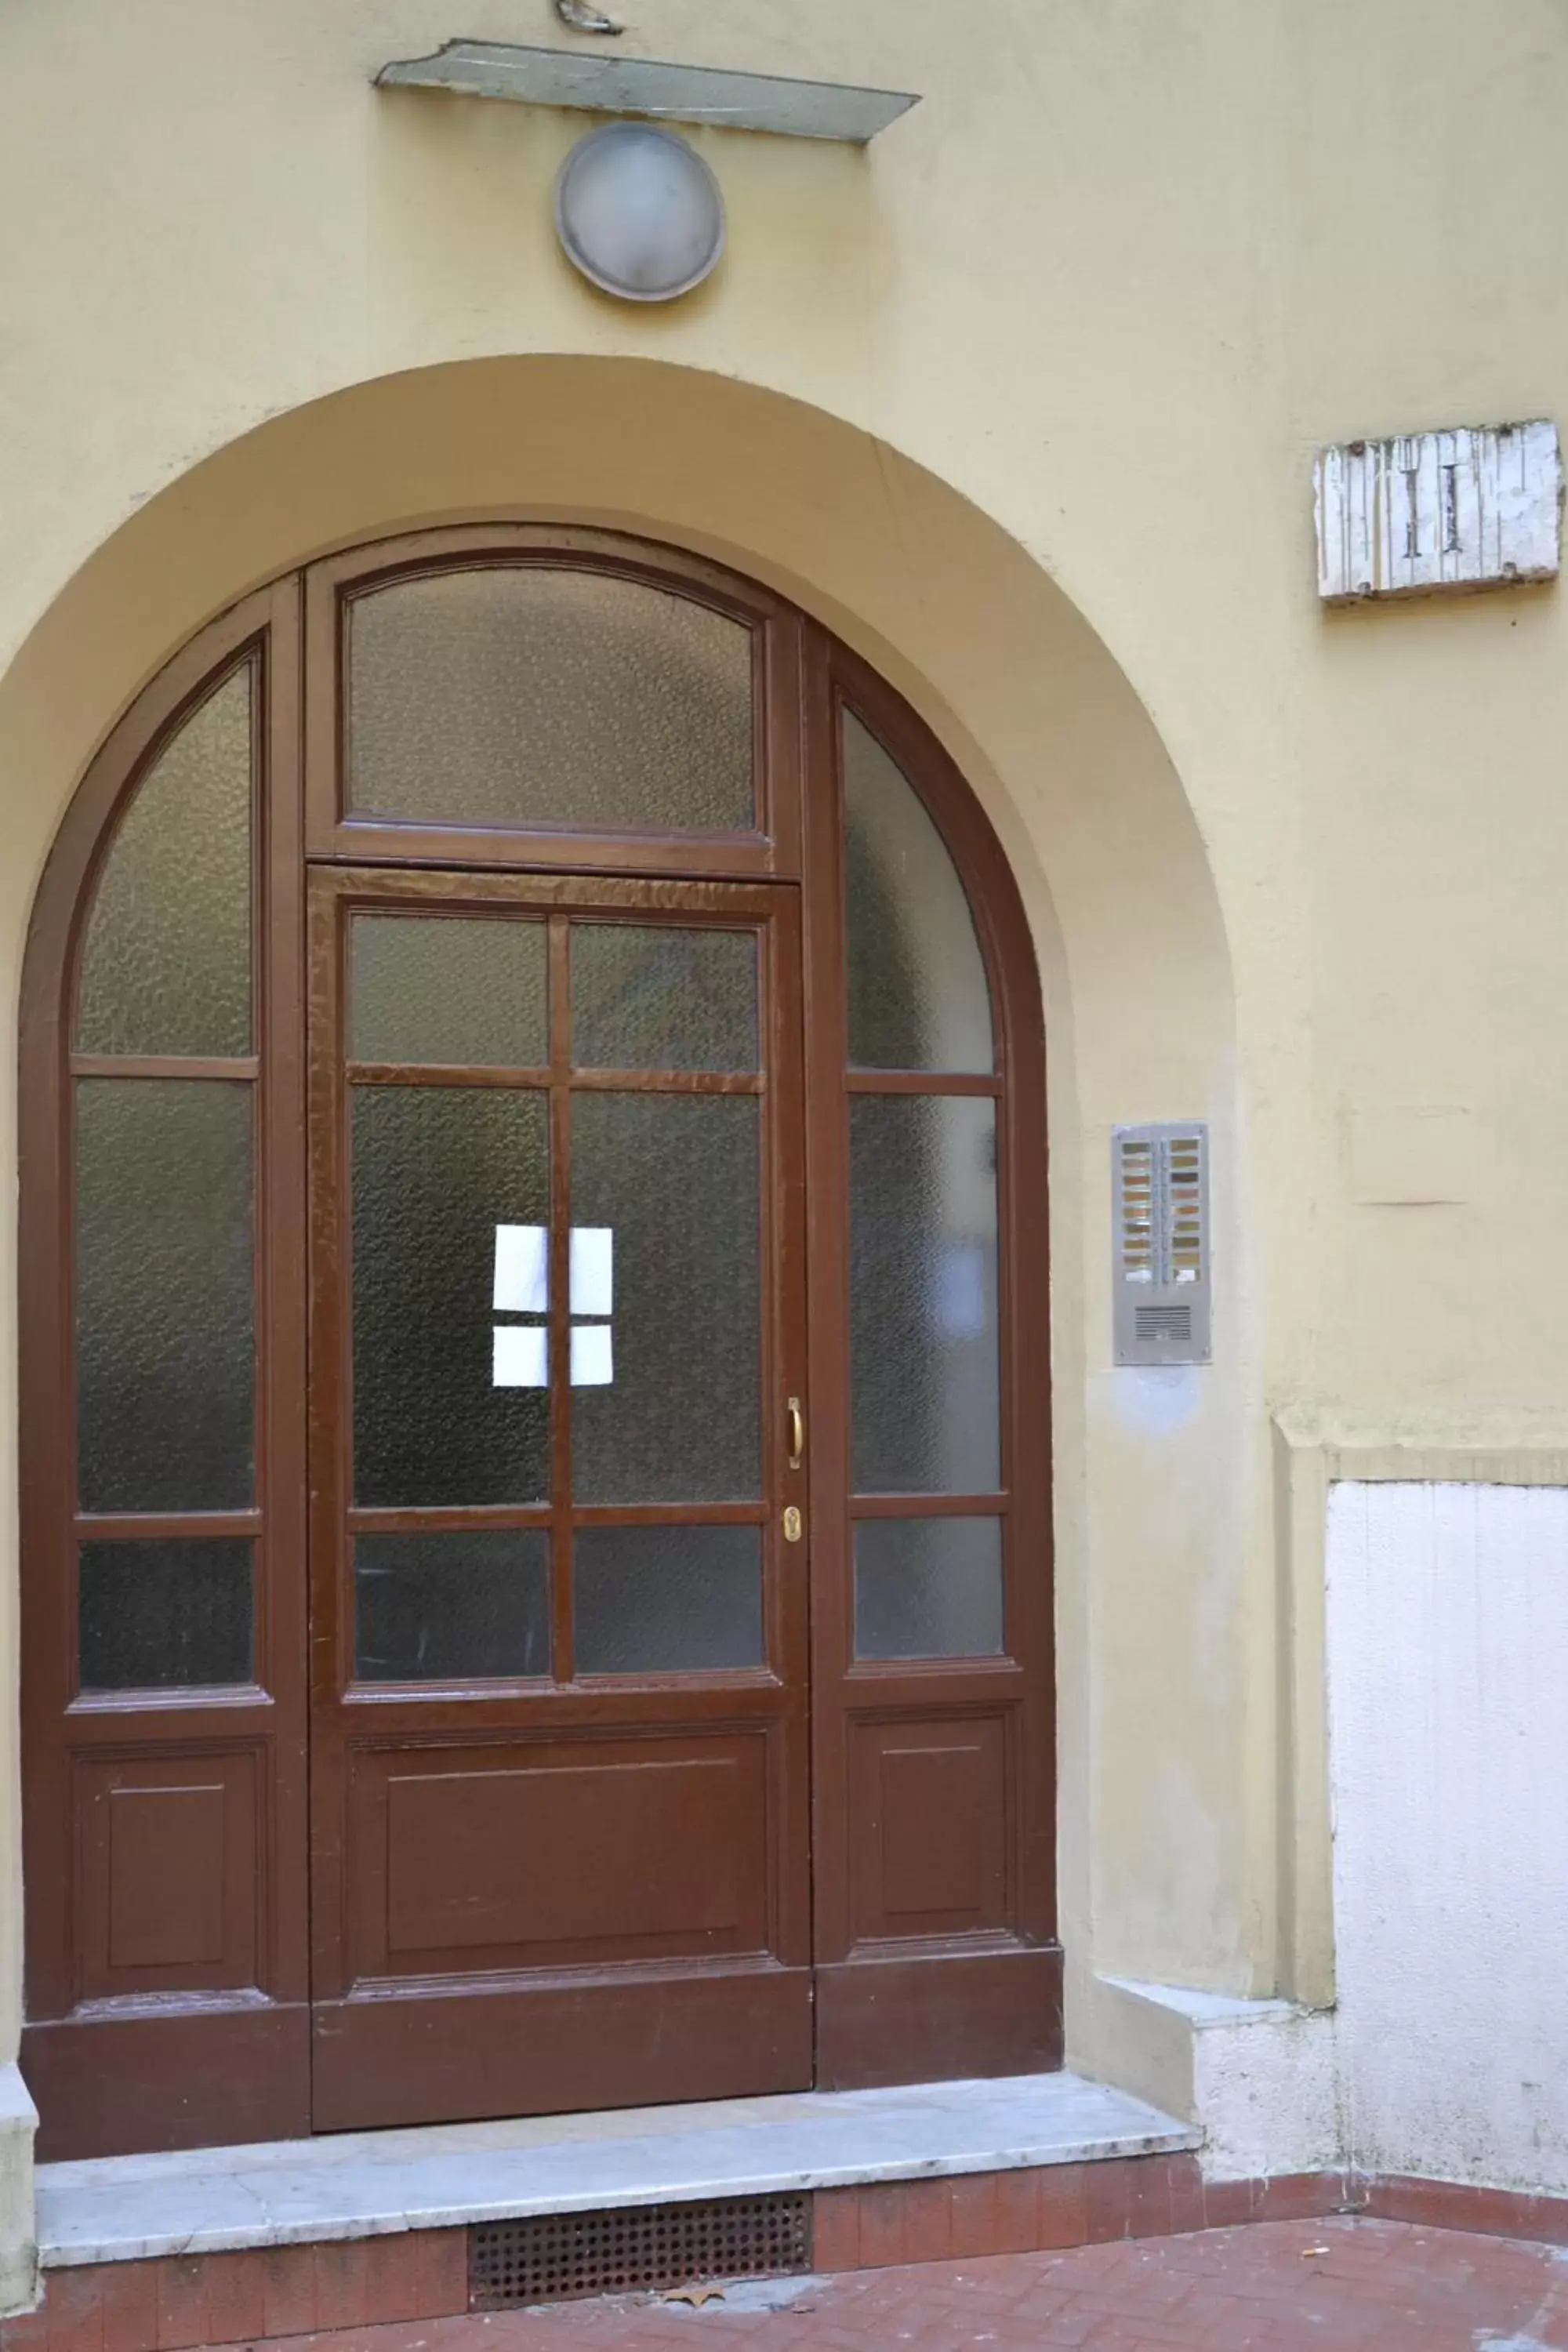 Facade/entrance in Milizie 76 Gallery